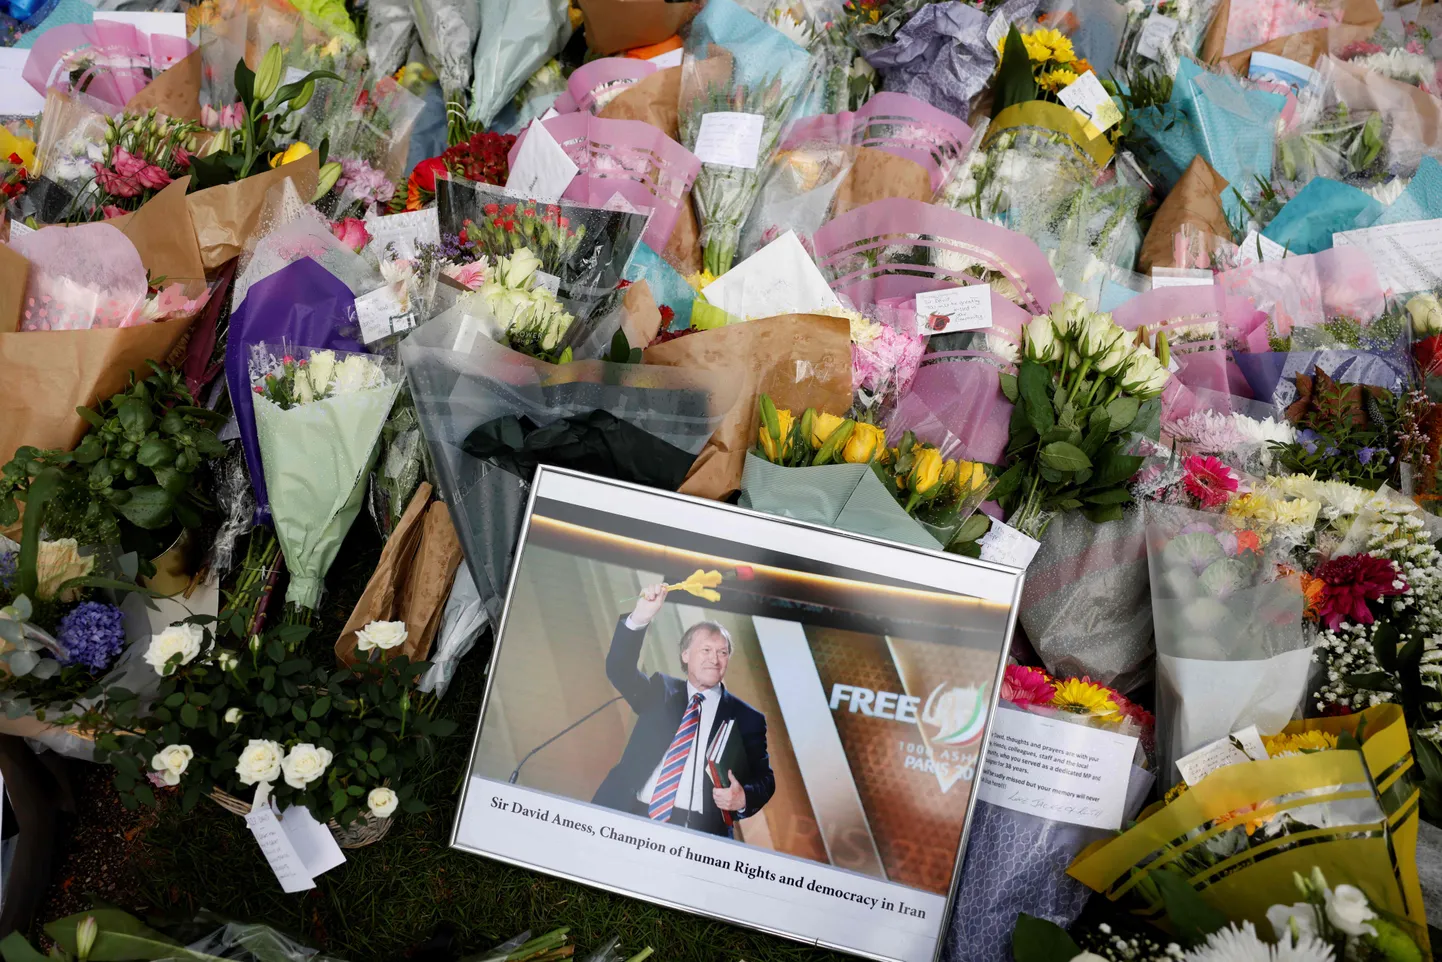 Briti saadiku David Amessi mälestuseks toodud lillekimbud tema tapmise paigas.